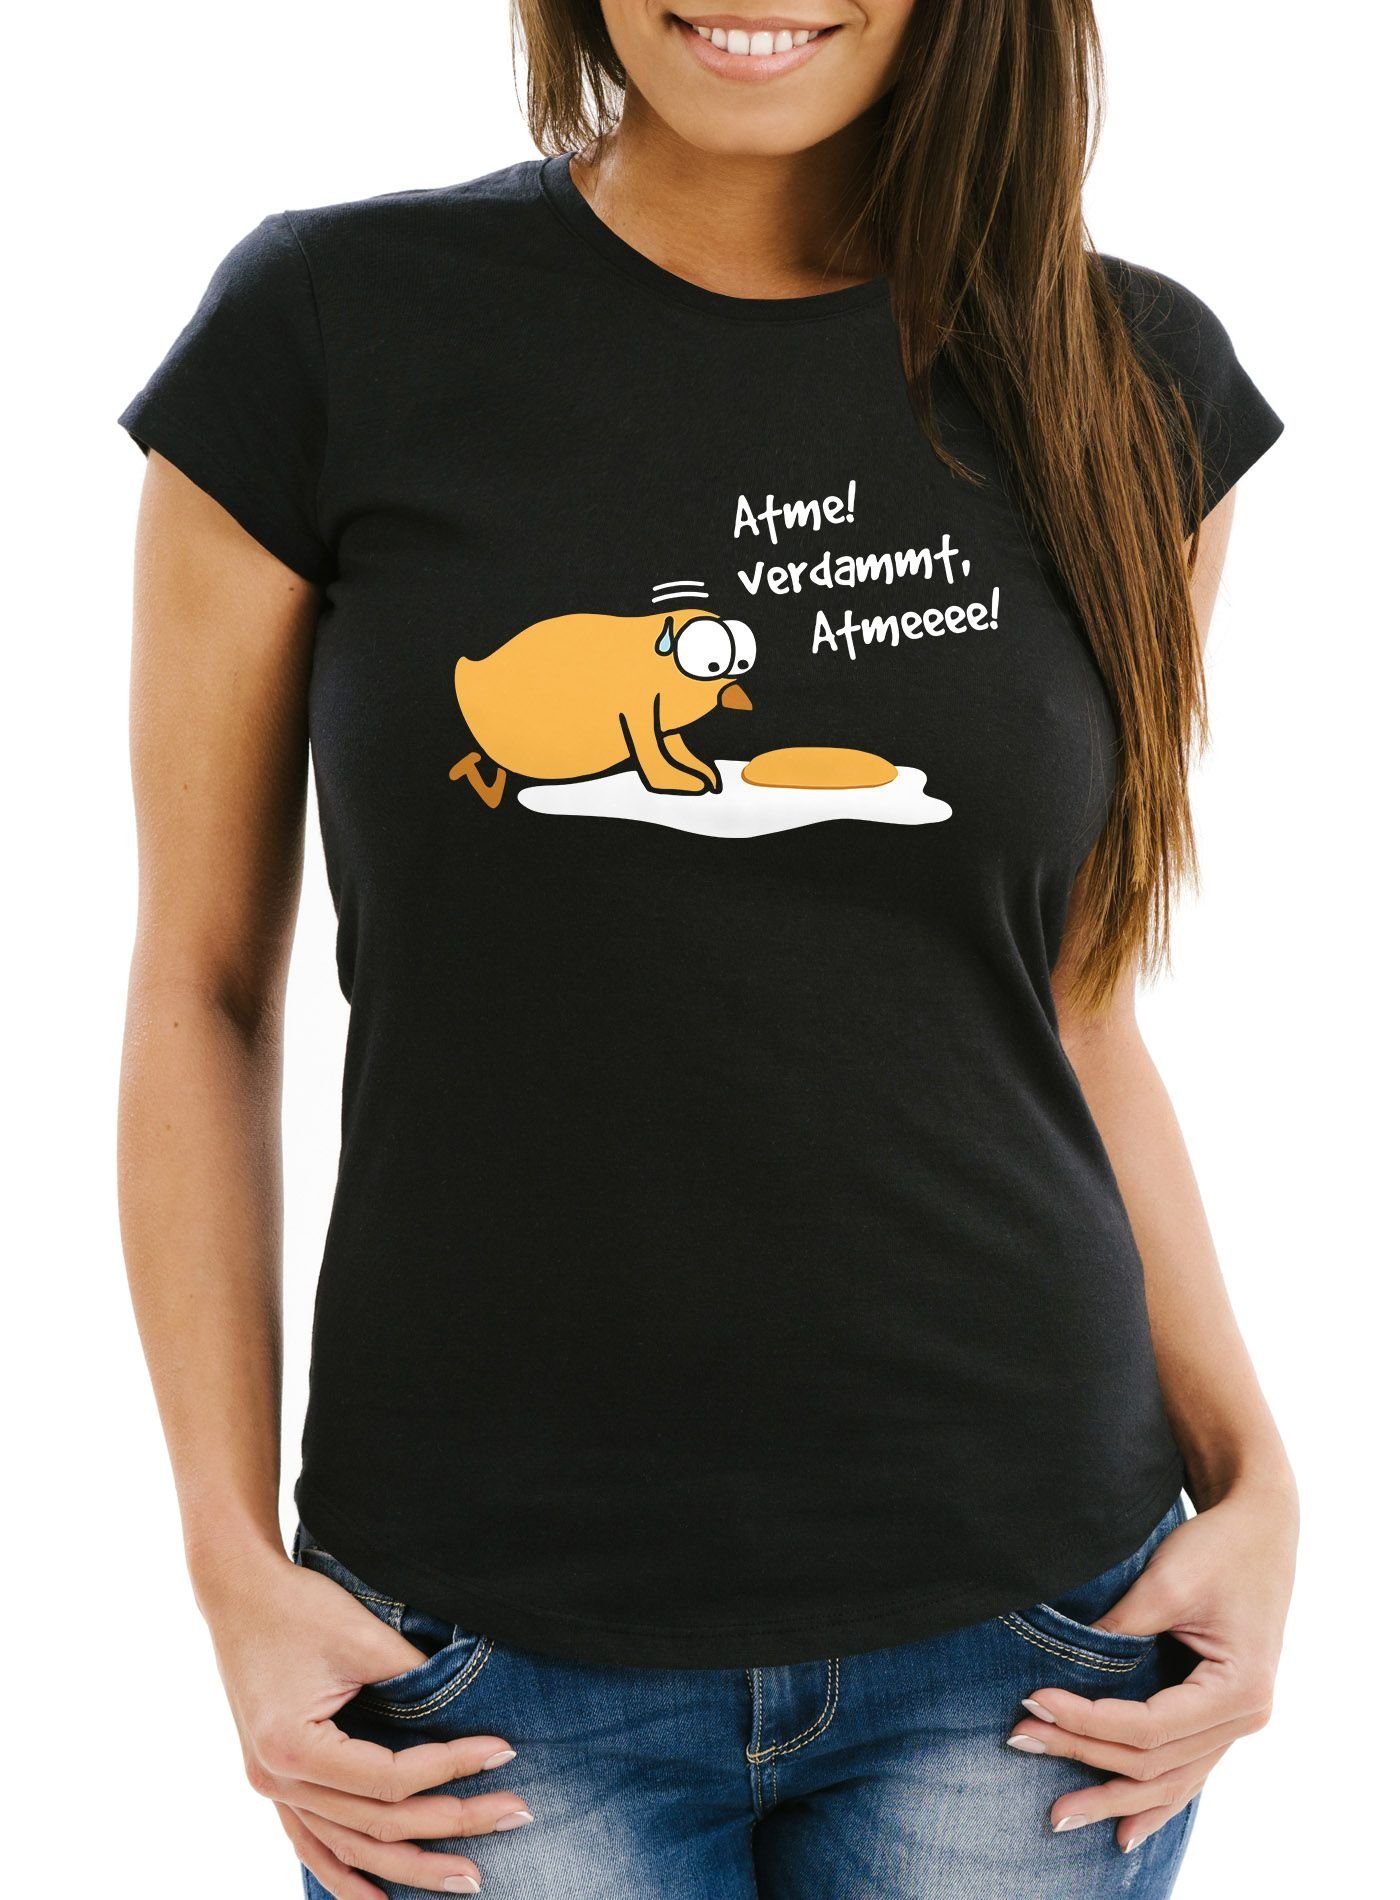 MoonWorks Print-Shirt Damen T-Shirt Spiegelei Verdammt Moonworks® Küken Fun-Shirt Atme! Frauen lustig mit Spruch Print